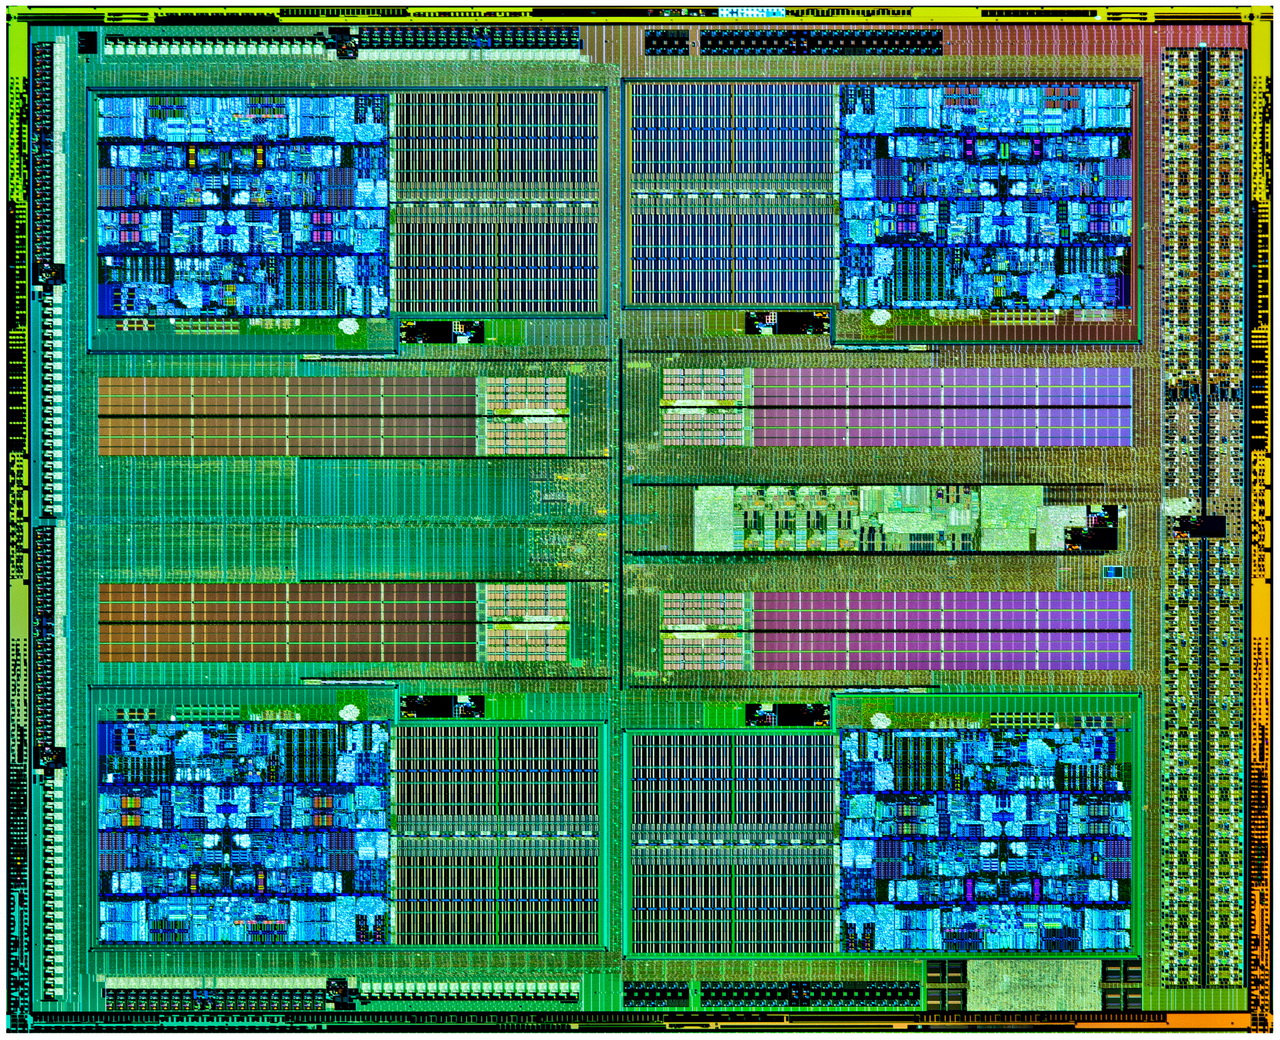 Игры работающие на процессоре. FX 6300 процессор архитектура. 5 НМ техпроцесс. АМД ФХ техпроцесс. Ядро процессора: Vishera.